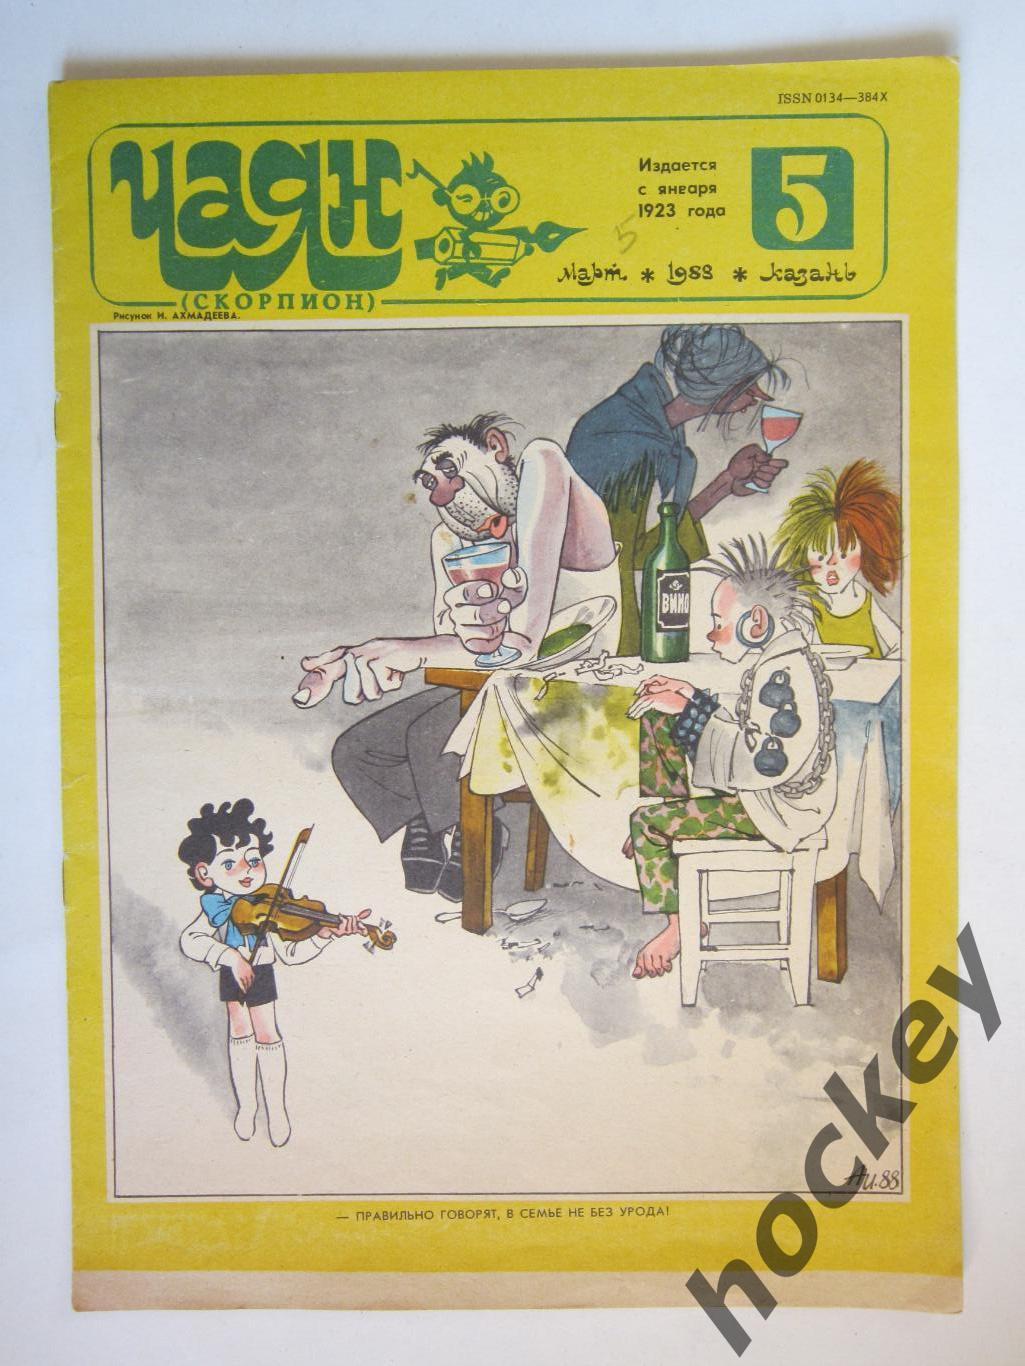 Журнал Чаян № 5 (март).1988